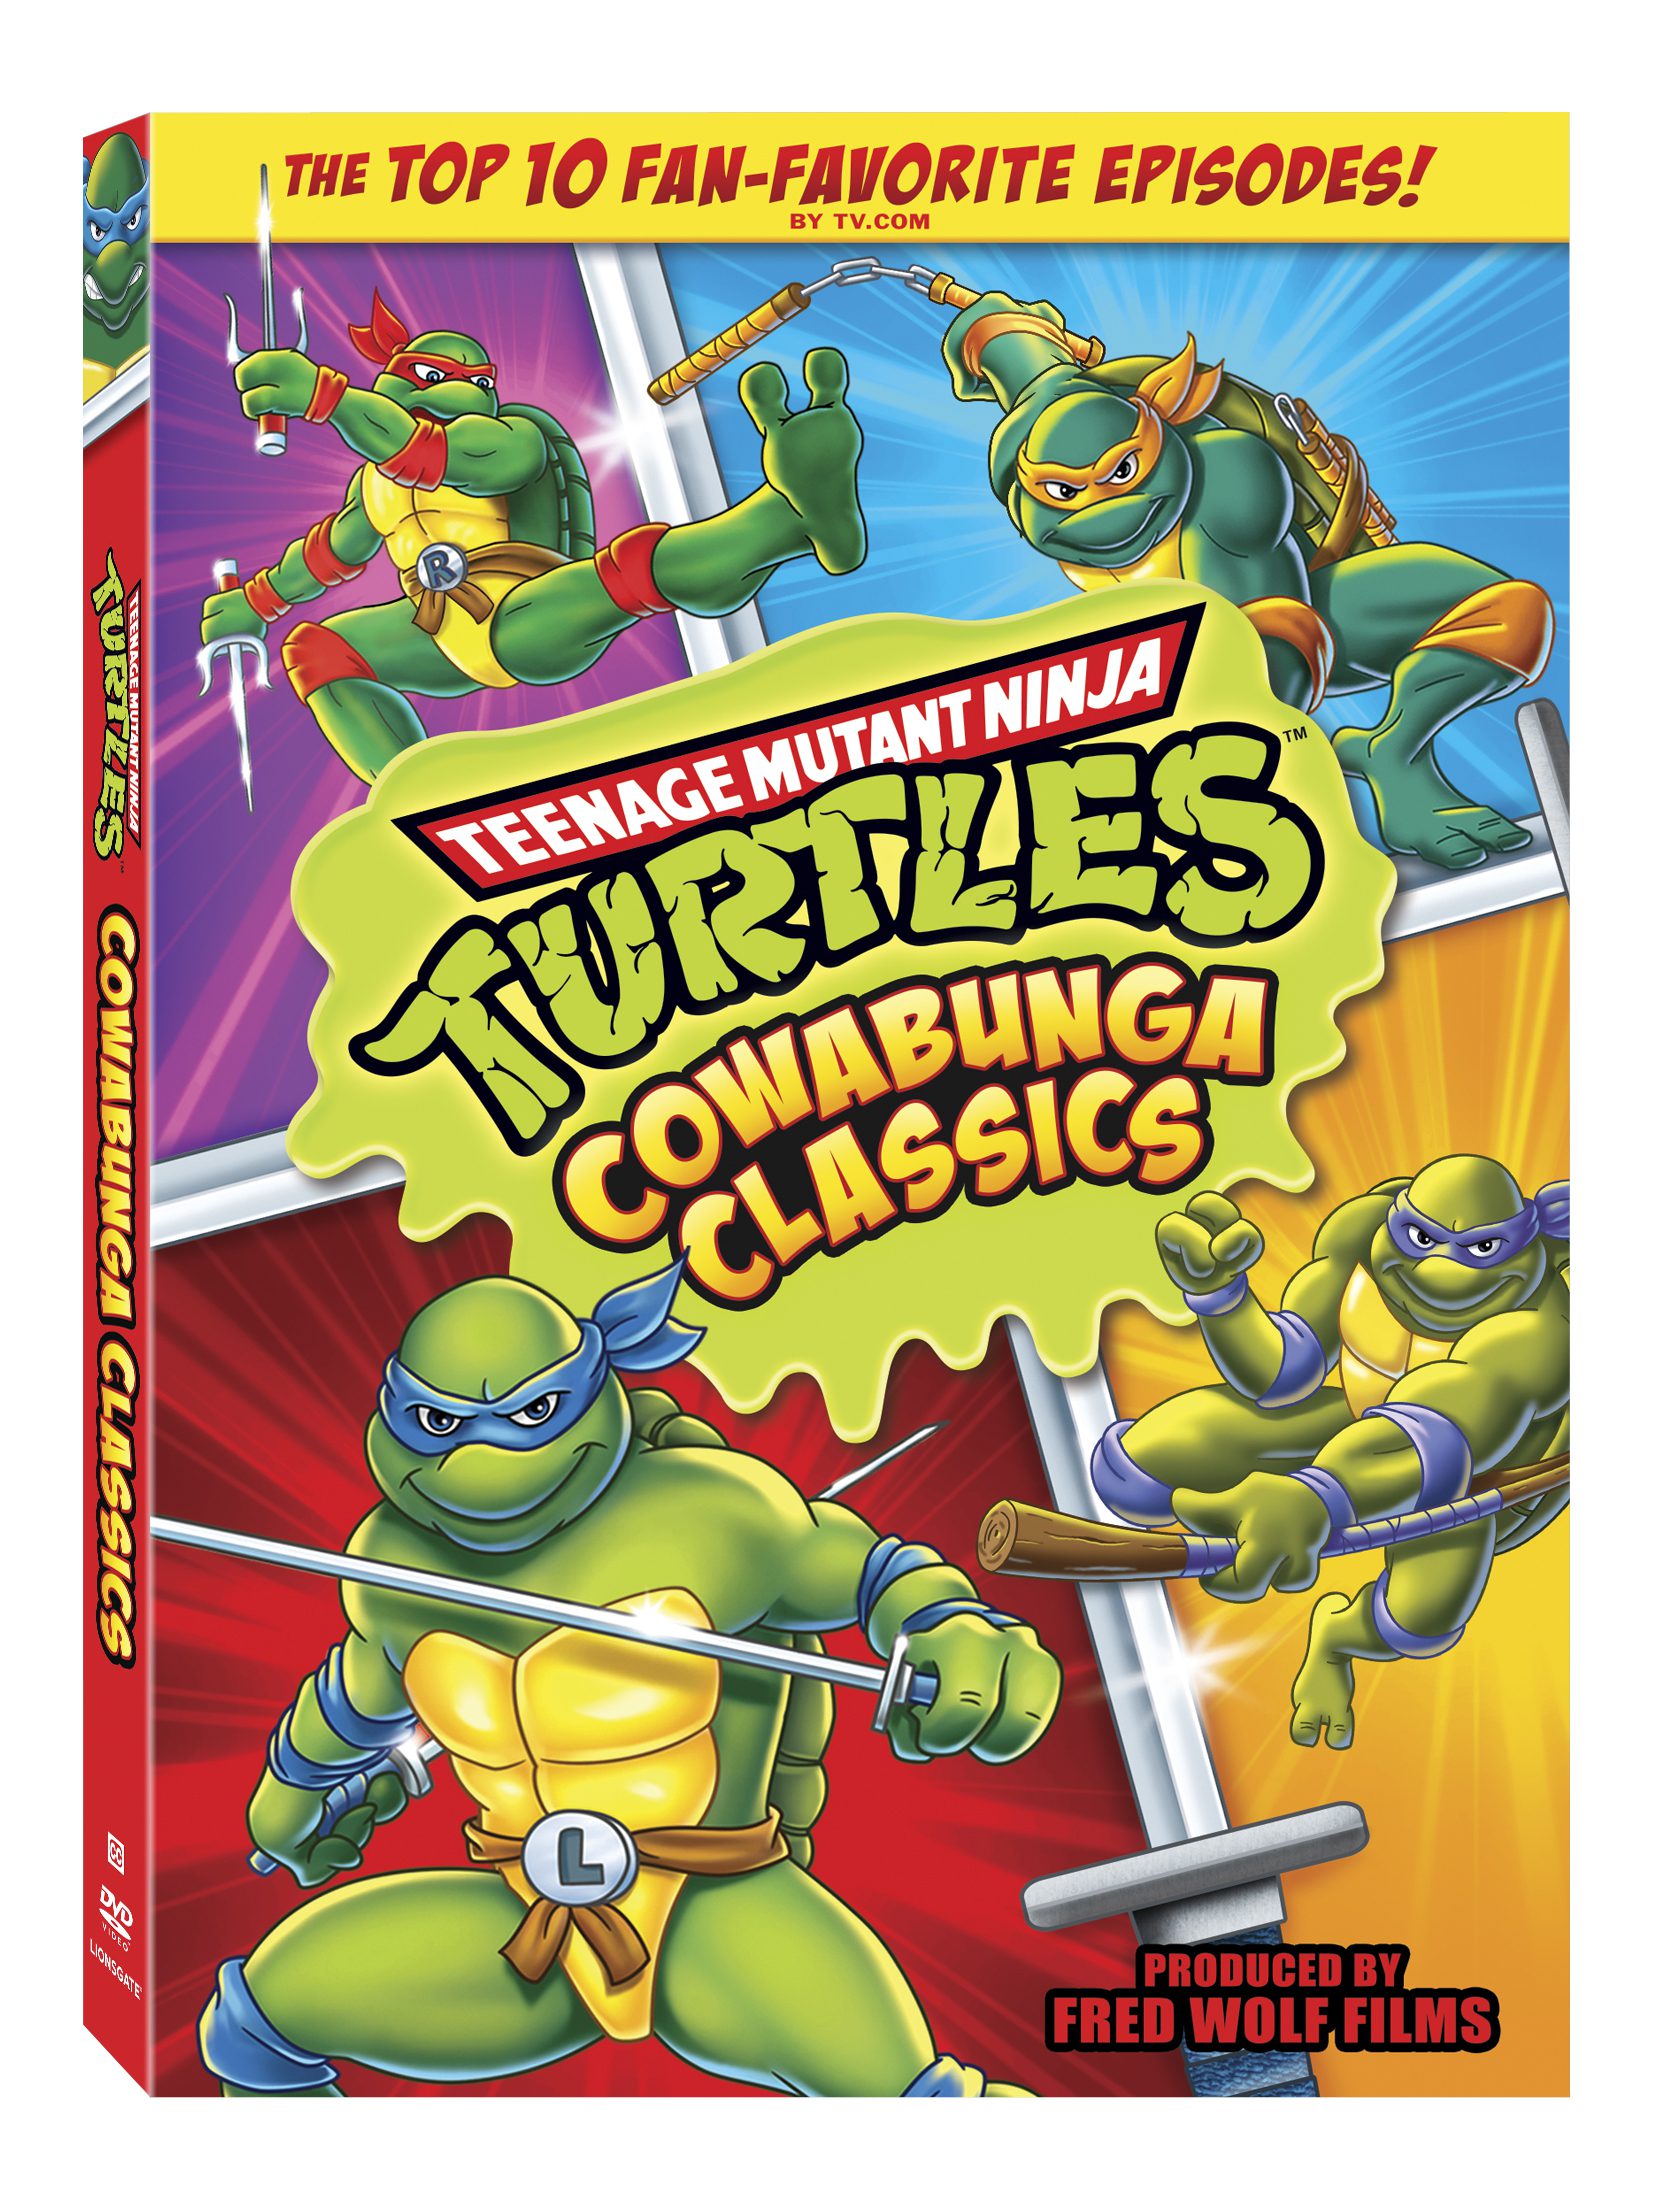 Teenage Mutant Ninja Turtles: Cowabunga Classics DVD